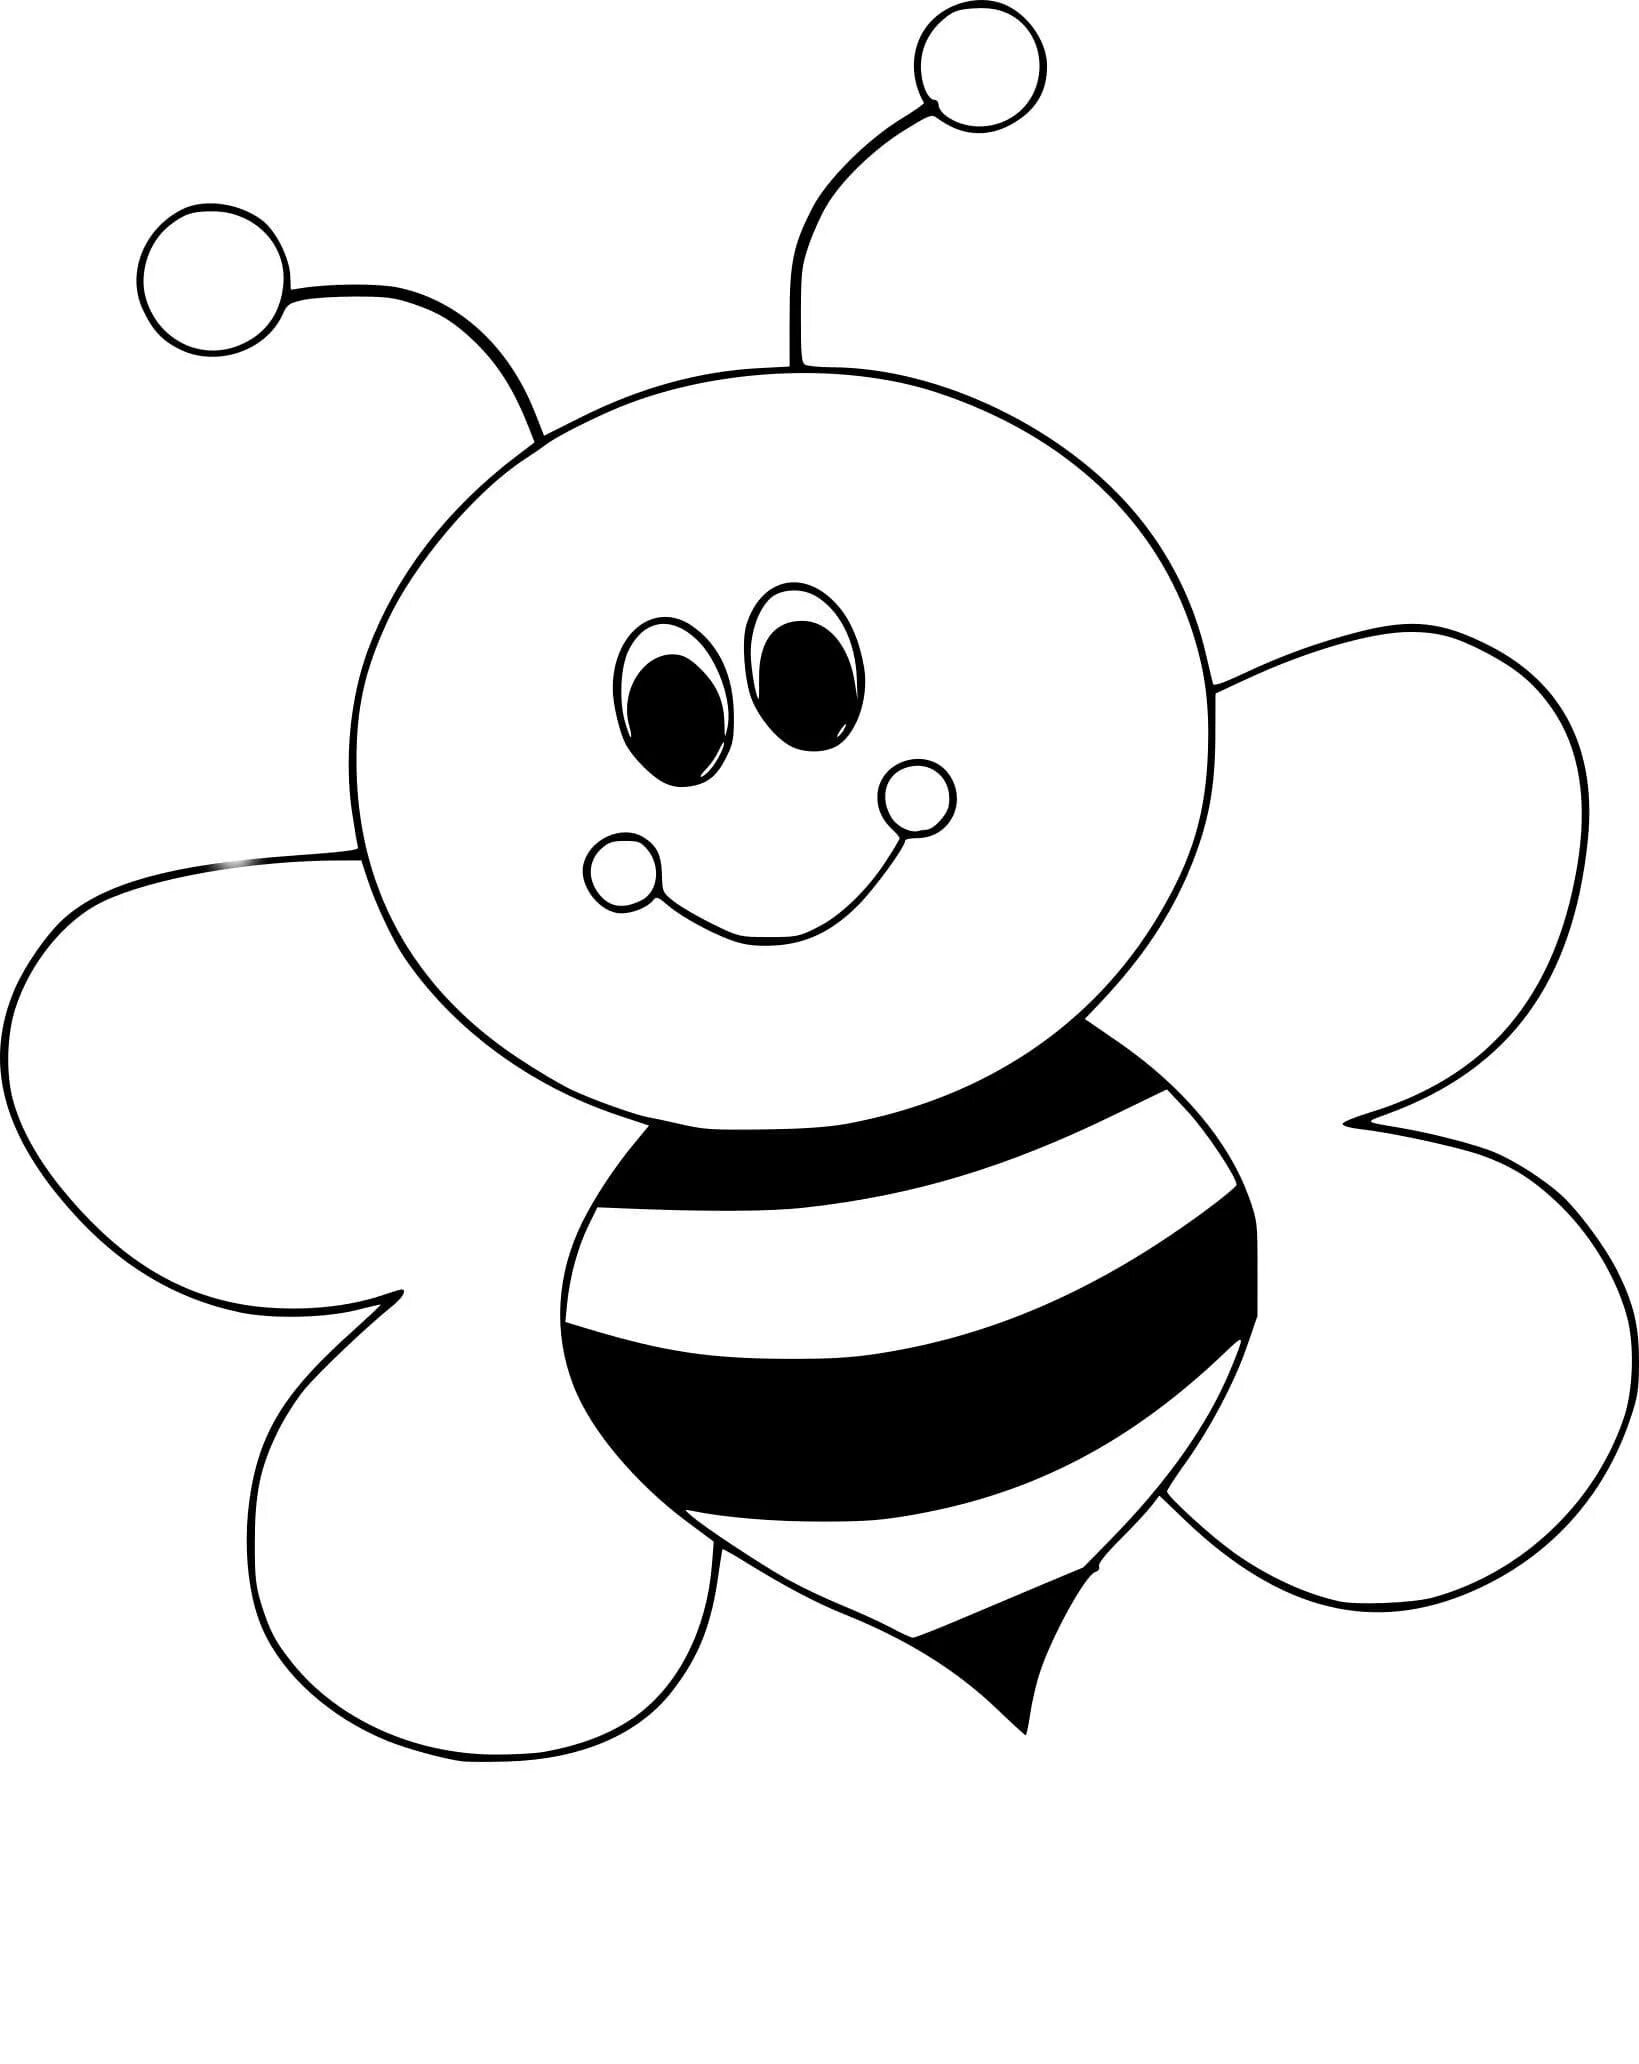 Пчела раскраска. Раскраска пчёлка для детей. Пчела раскраска для детей. Пчелка раскраска для малышей. Раскраска пчела для детей